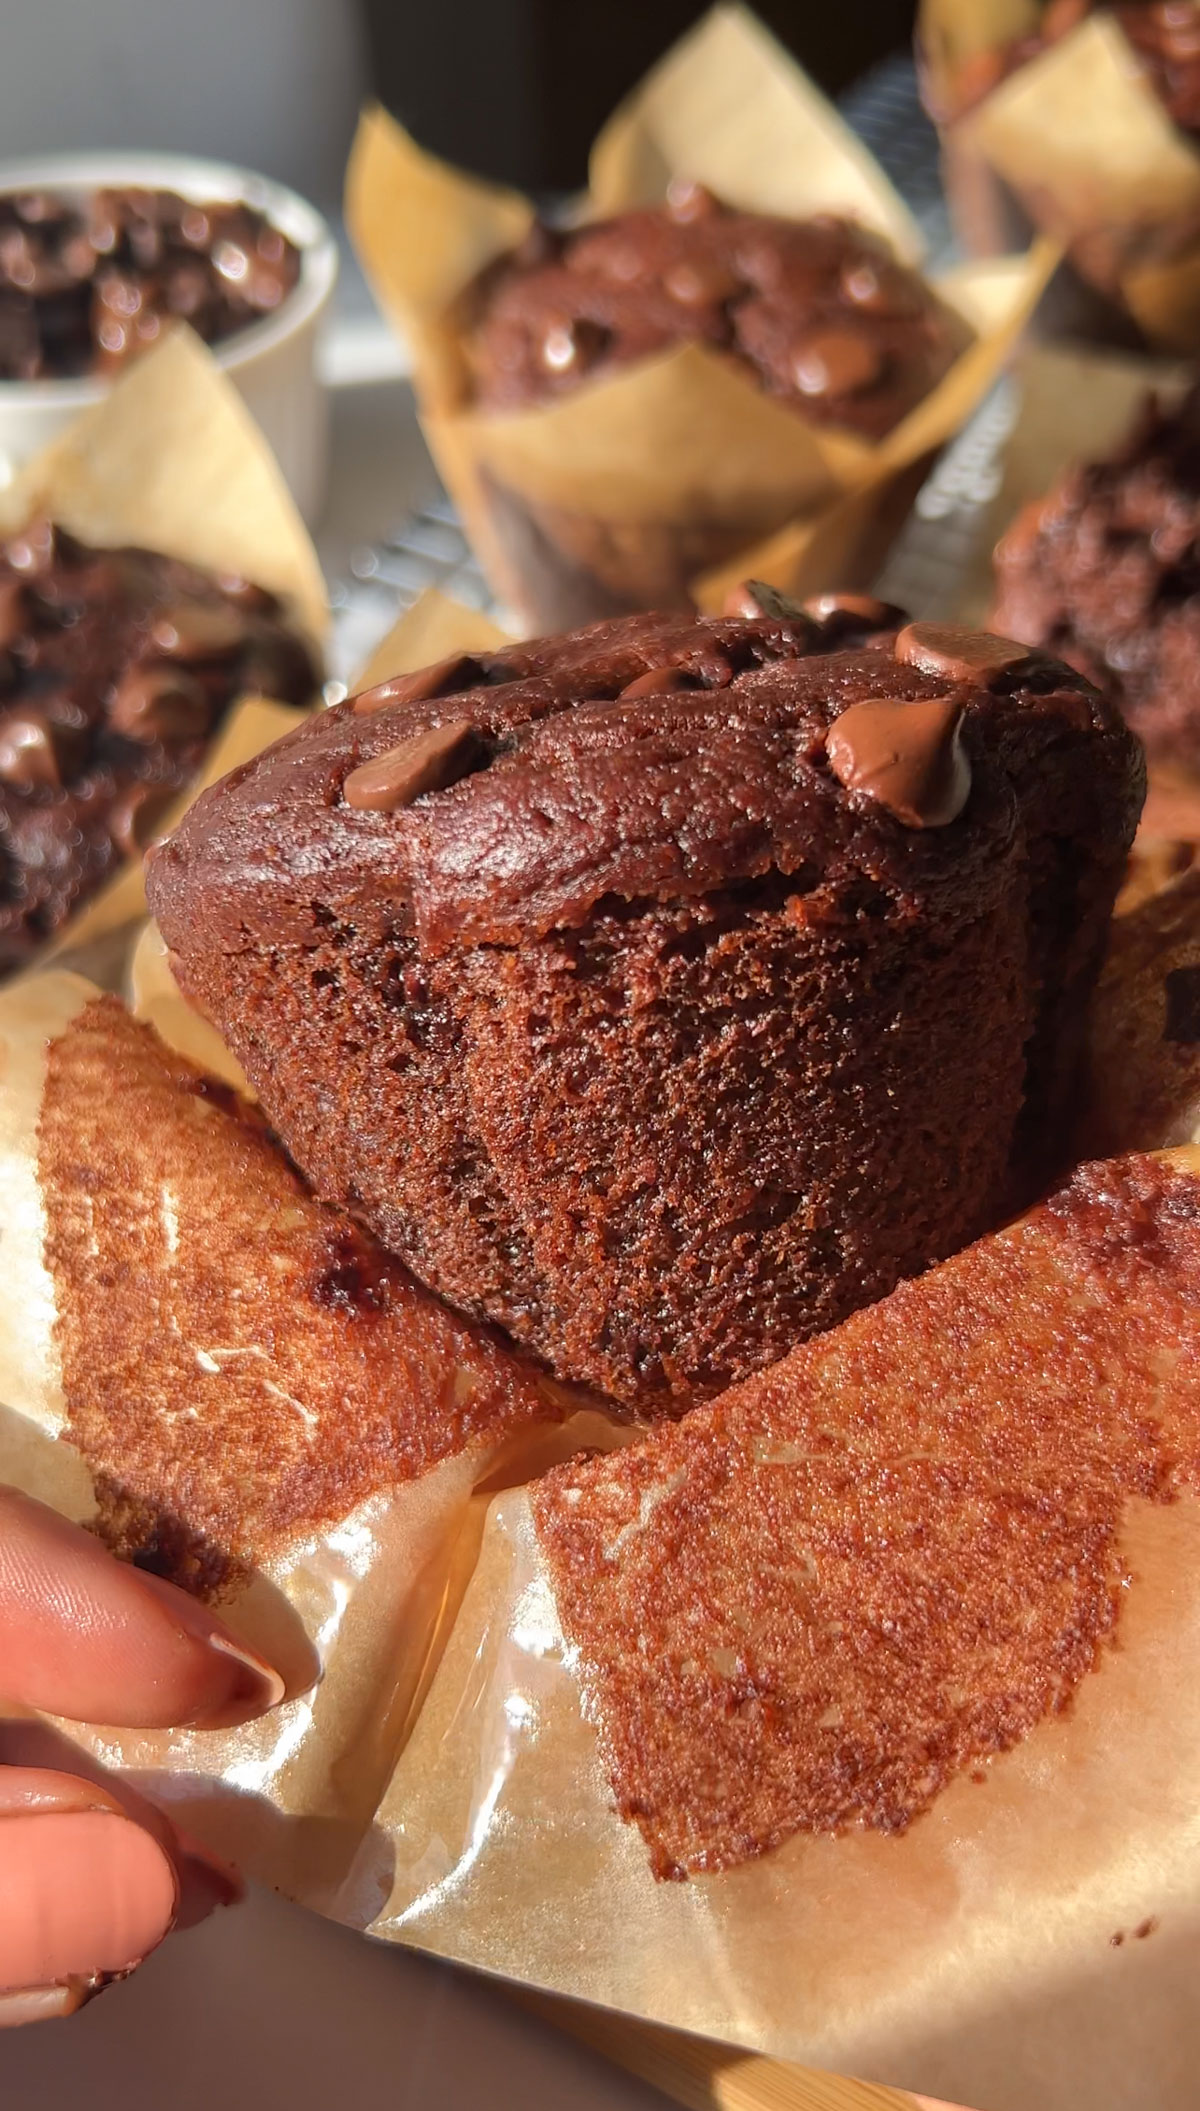 a vegan chocolate muffin